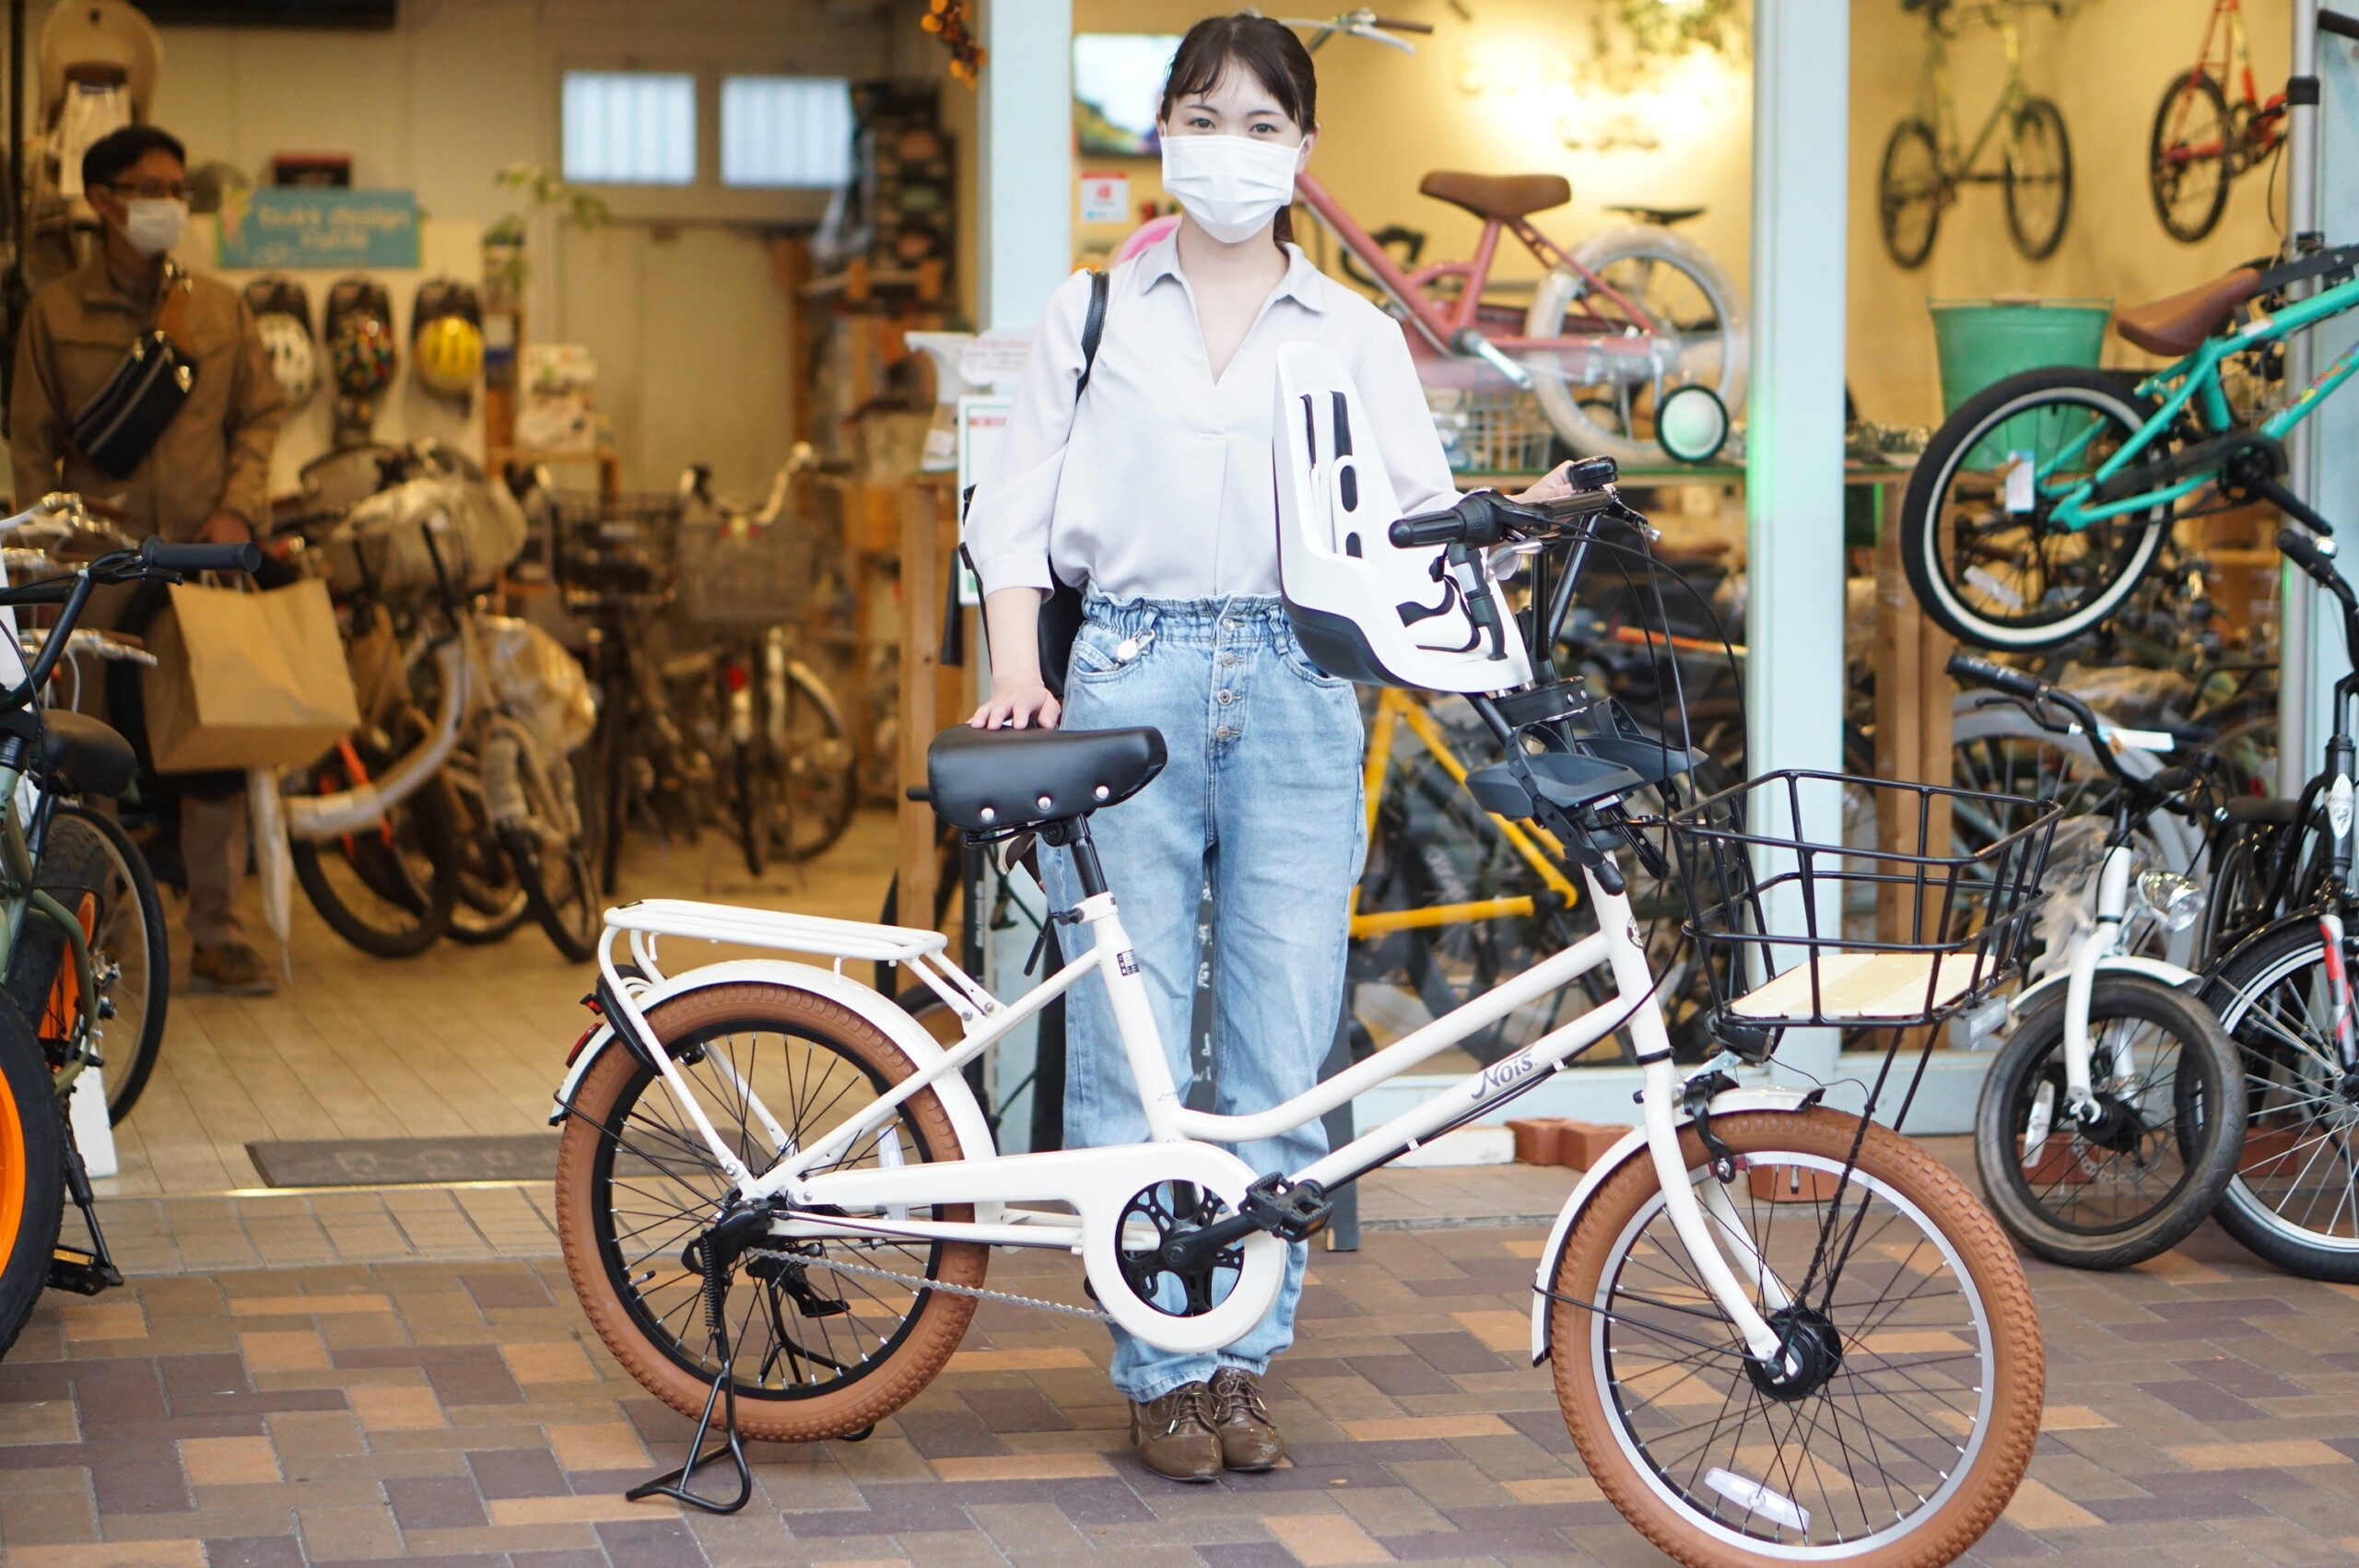 おしゃれな子ども乗せ自転車と素敵なお客様 親子で乗れるおしゃれでかっこいい自転車をお求めなら愛知県名古屋市北区のバズデザインサイクル